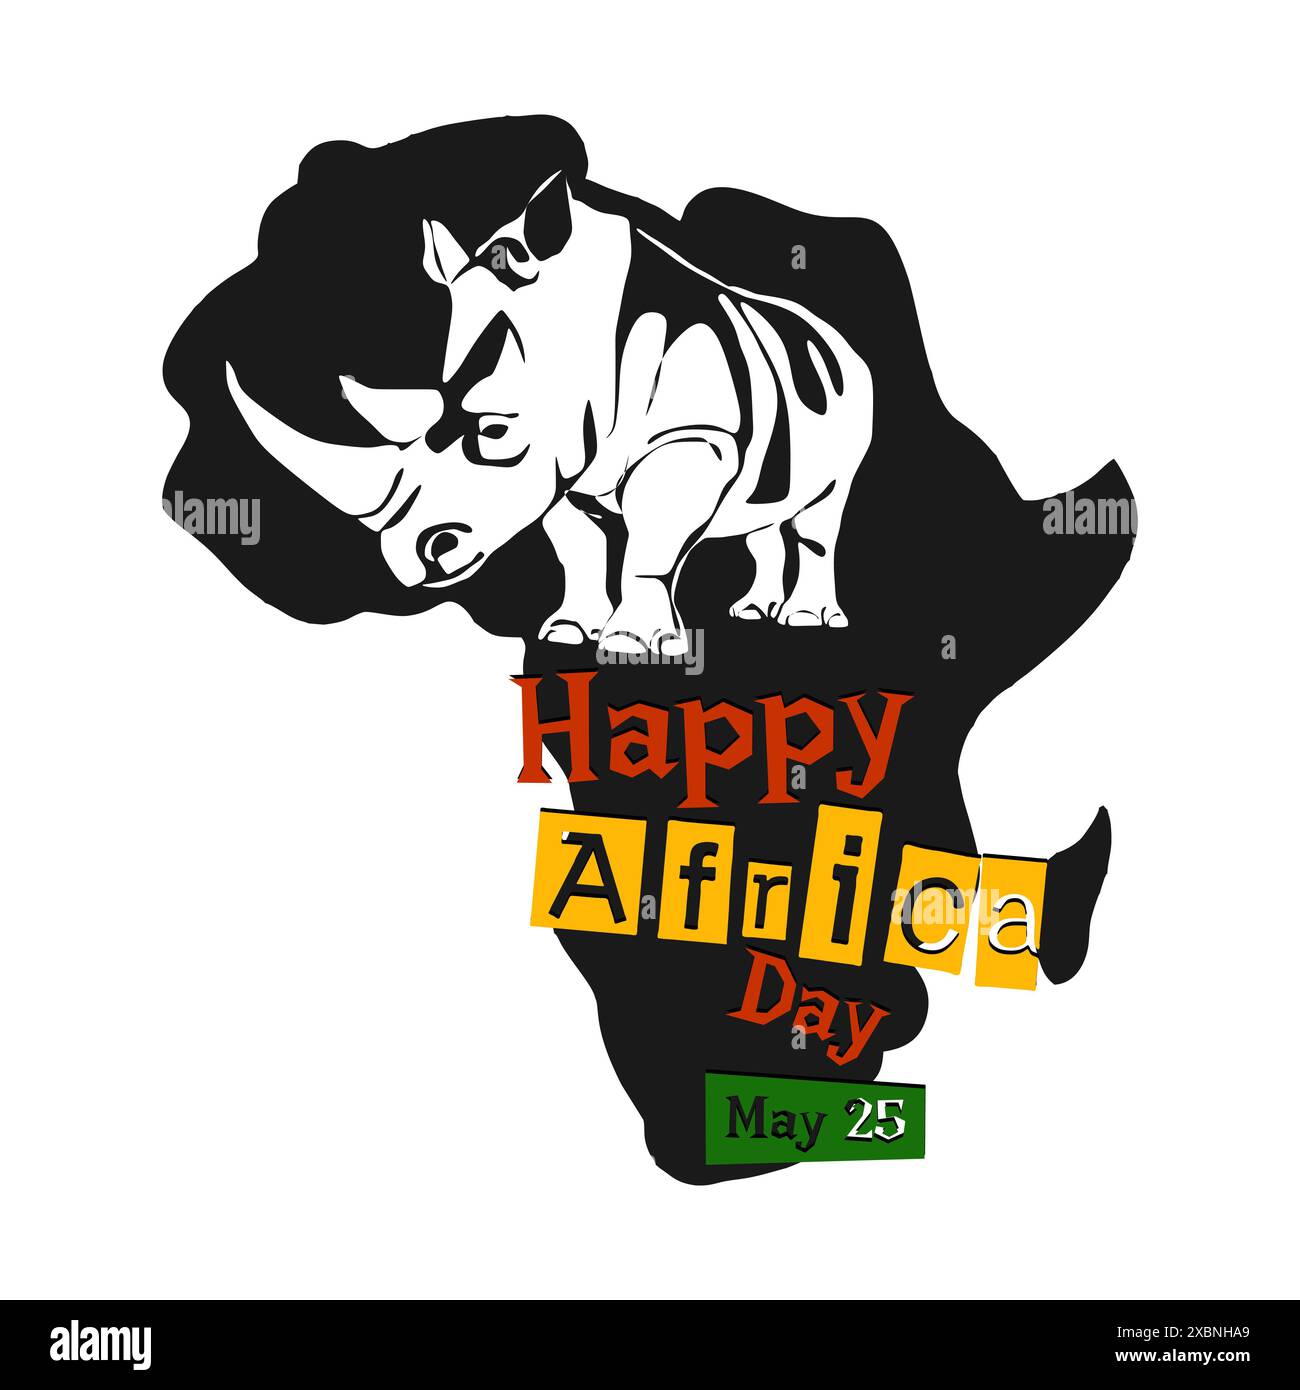 Illustration zum Welt-Afrika-Tag mit Afrika-Karte und Silhouette afrikanischer Tiere. Poster zum 25. Mai: Happy Africa Day Stock Vektor